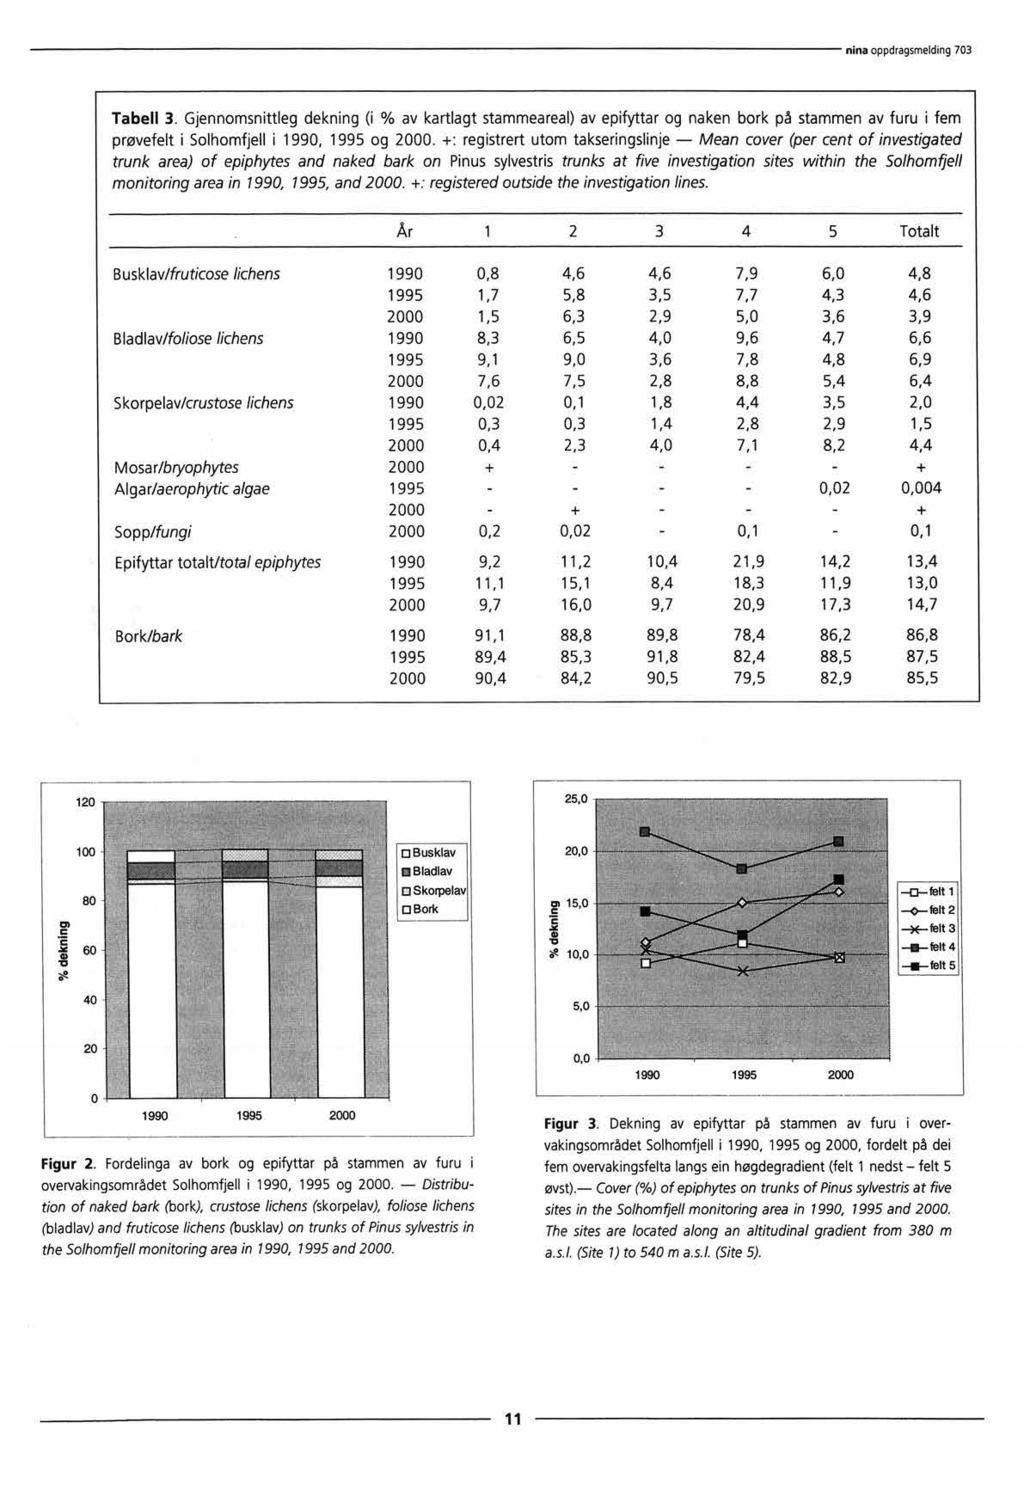 Tabell 3. Gjennornsnittleg dekning (i % av kartlagt stammeareal)av epifyttar og naken bork på stammen av furu i fem prøvefelt i Solhomfjell i 1990, 1995 og 2000.